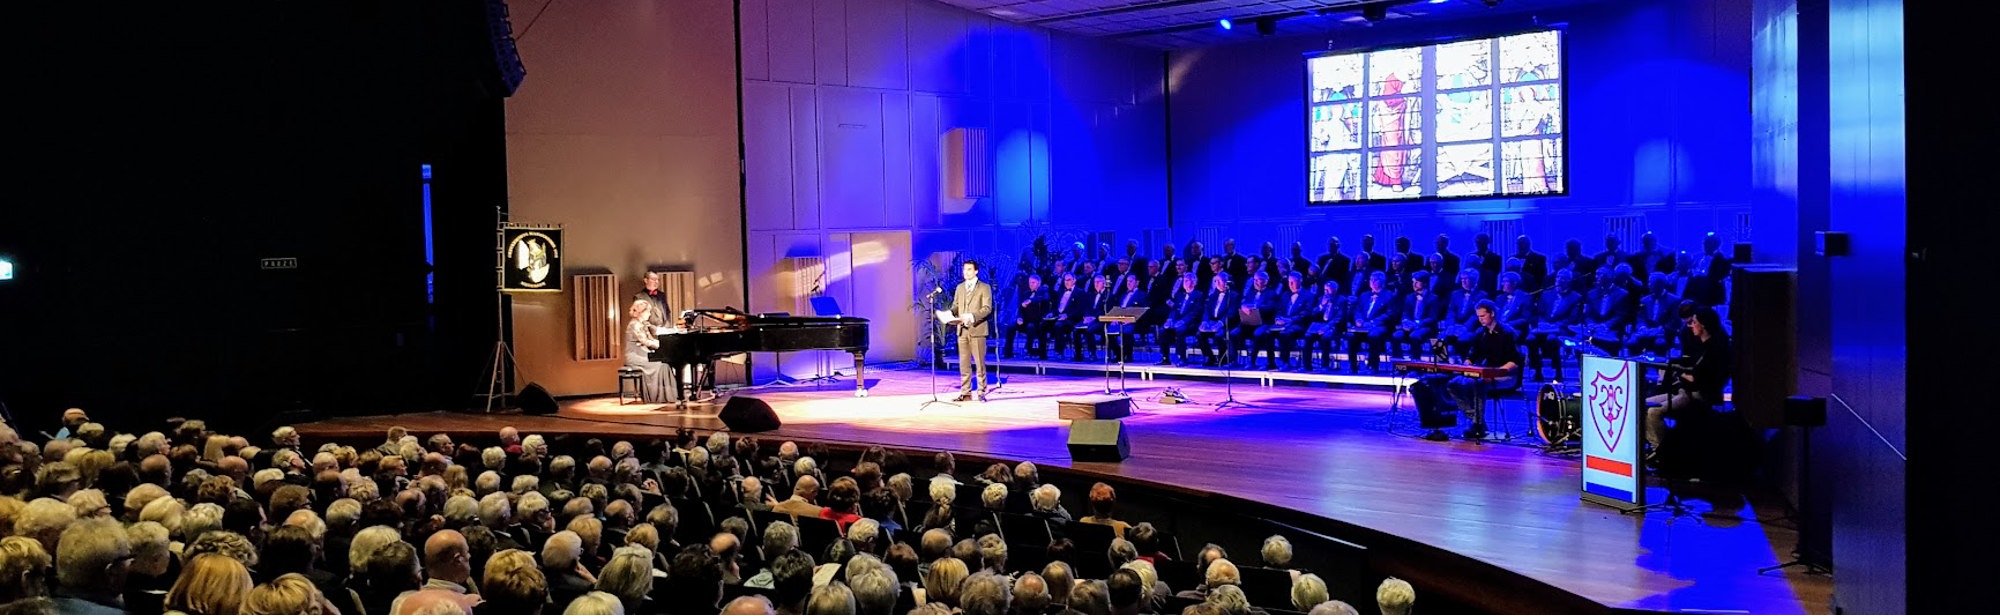 Een klassiek concert met gevulde zaal bij Parkstad Limburg Theaters Kerkrade